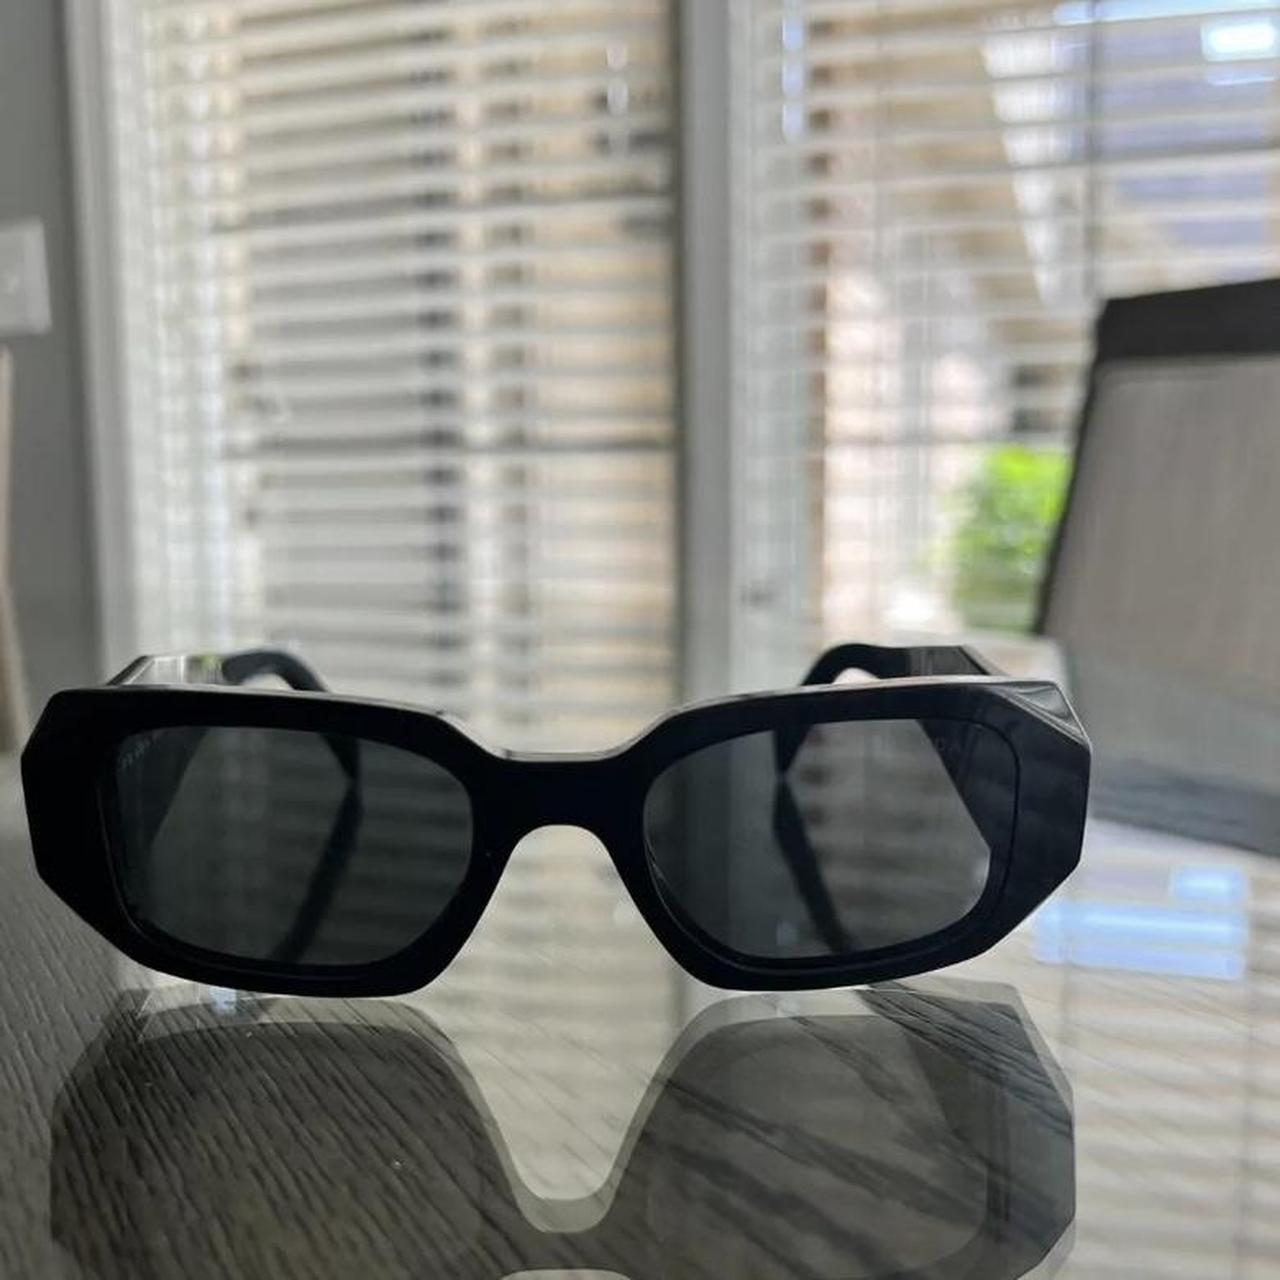 Used sunglasses - Depop